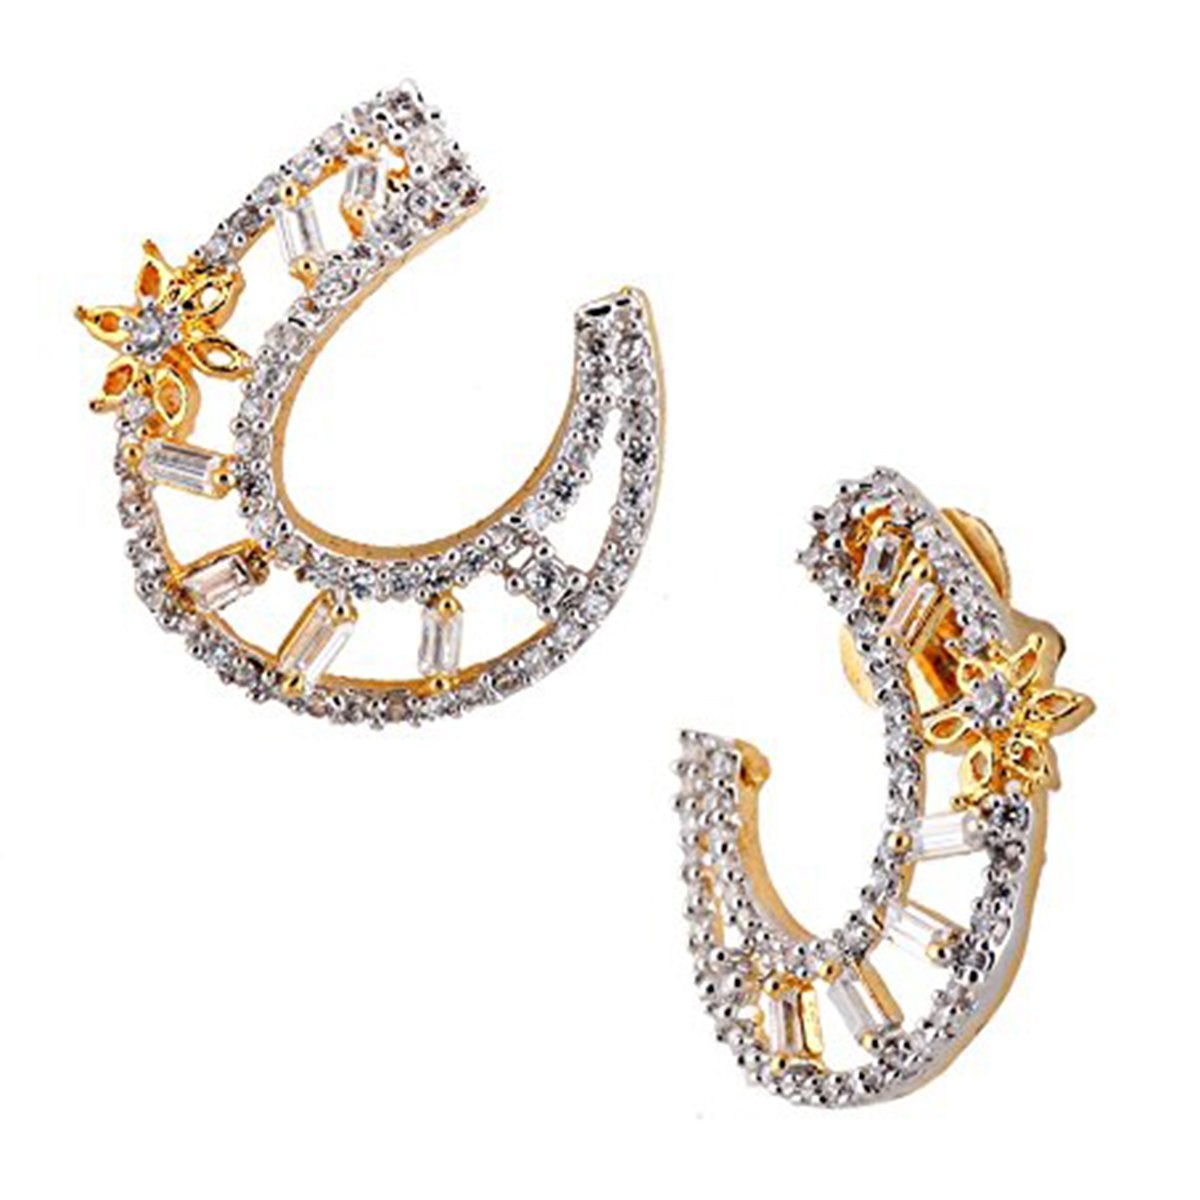 Crescent Flower American Diamond Baguette Earring For Women